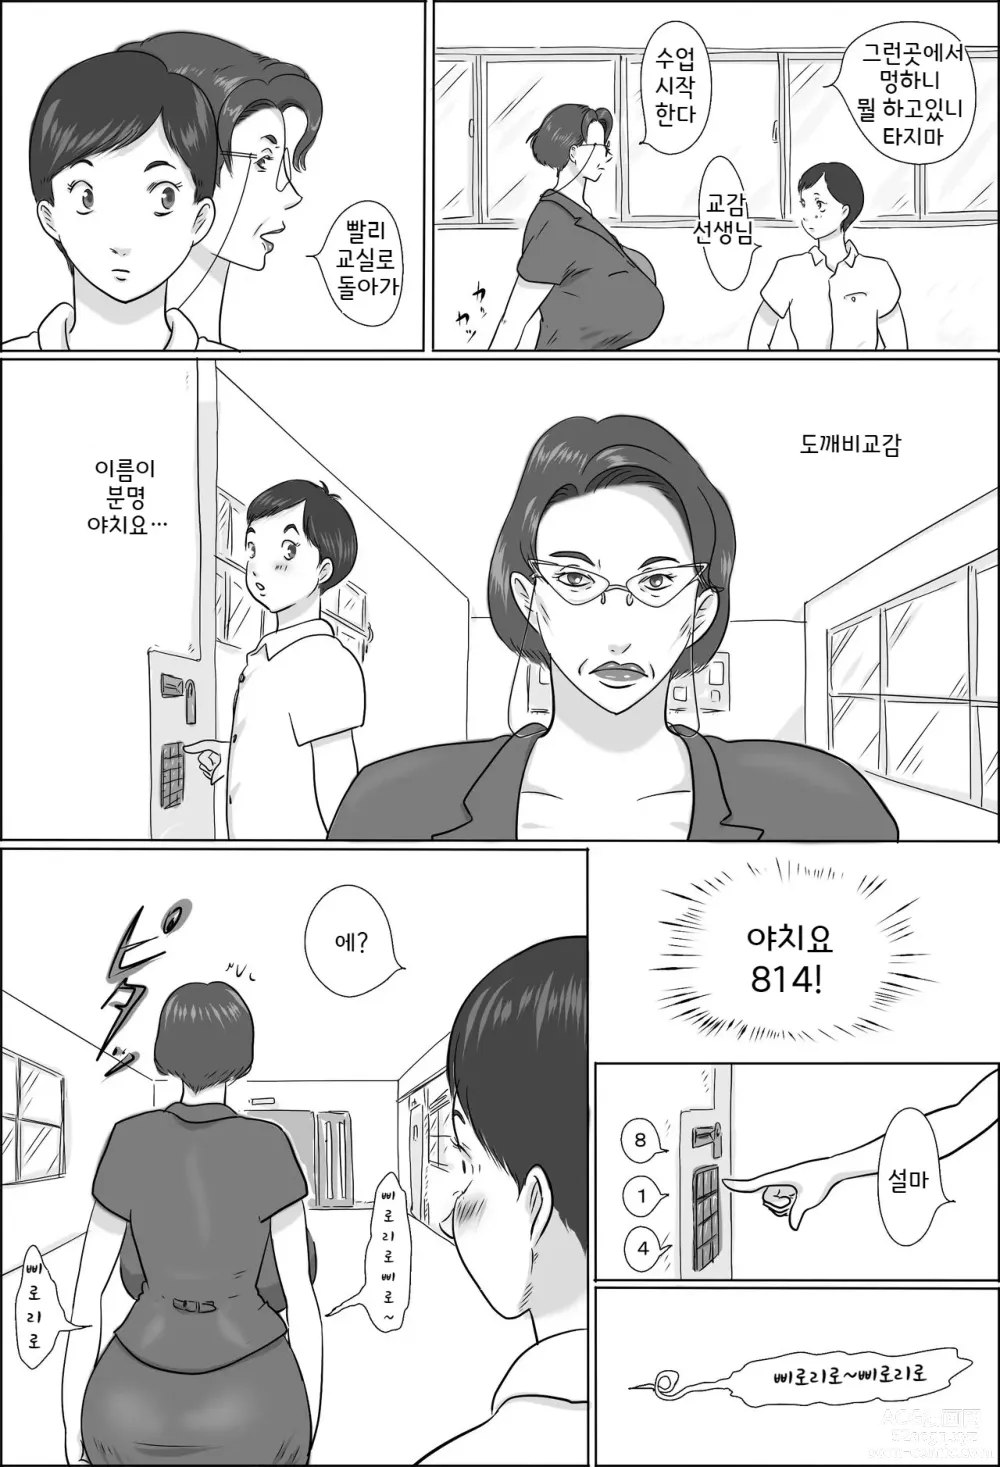 Page 3 of doujinshi 교감은 학교에서 교미를한다2